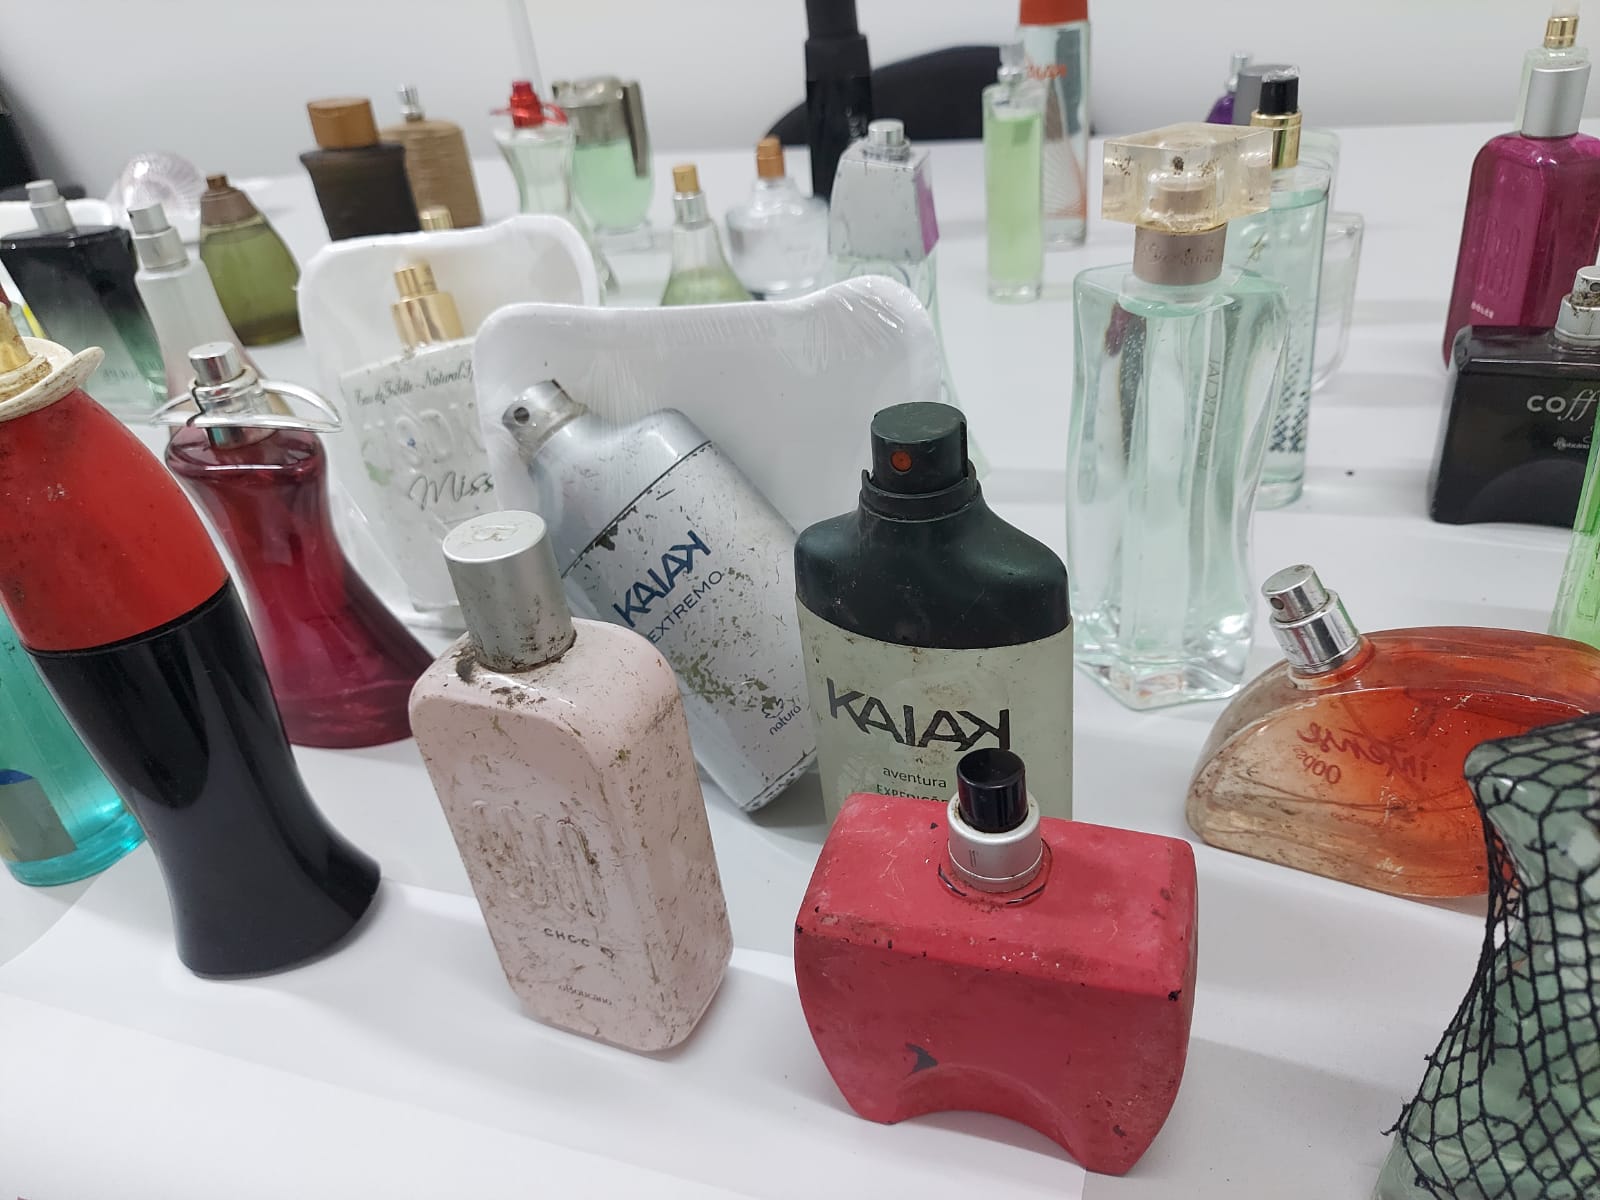 Procon de Içara apreende 62 perfumes adulterados